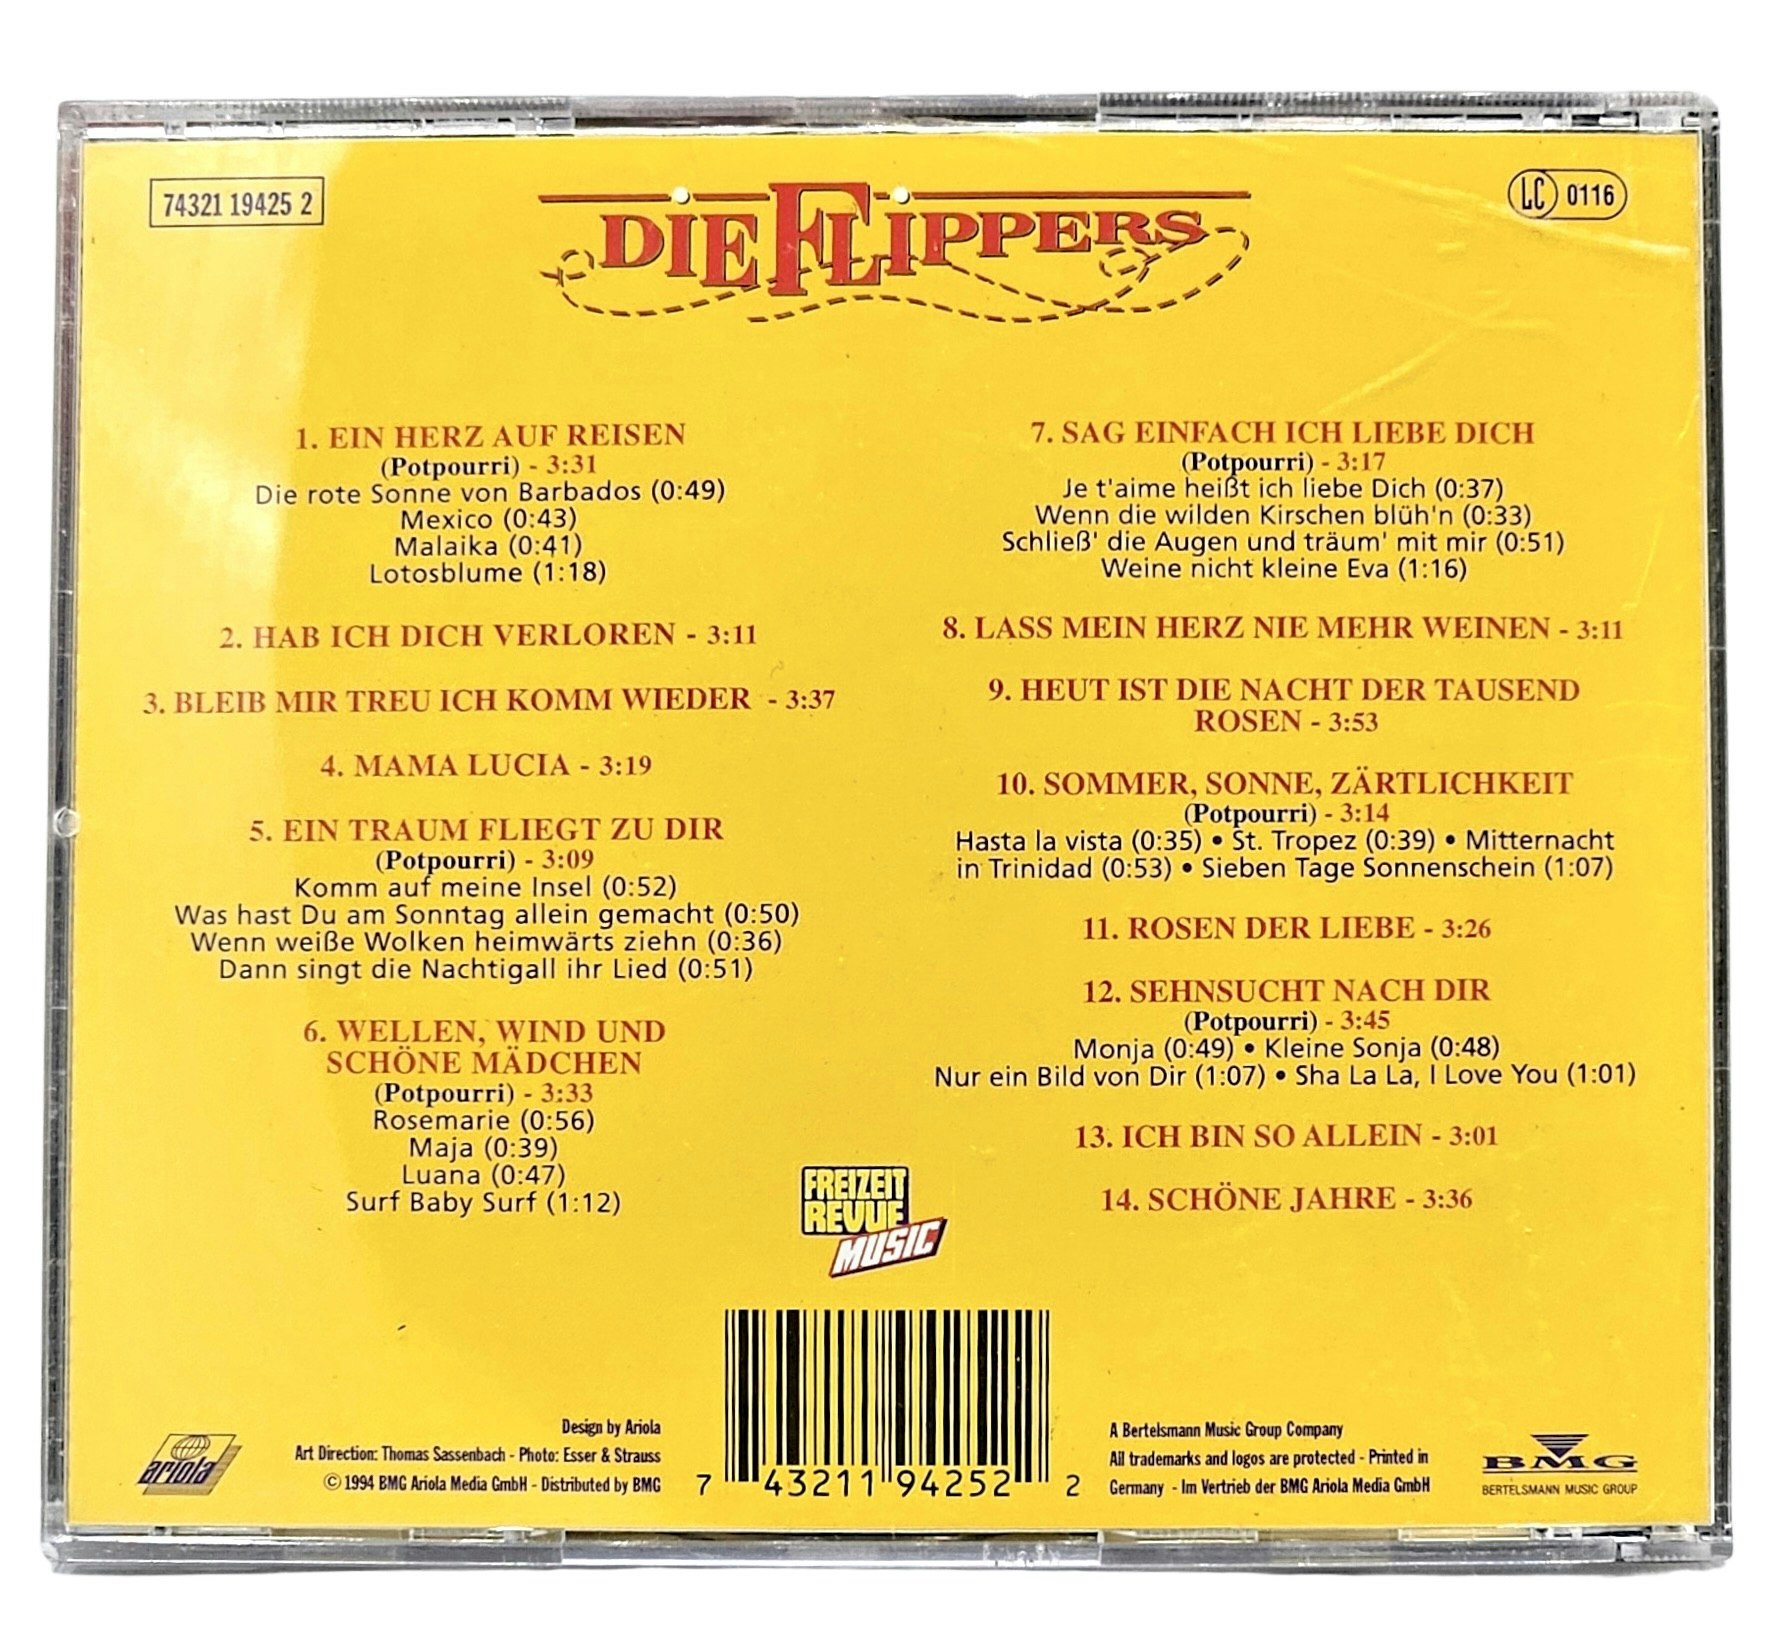 Die Flippers, Unsere Lieder, CD